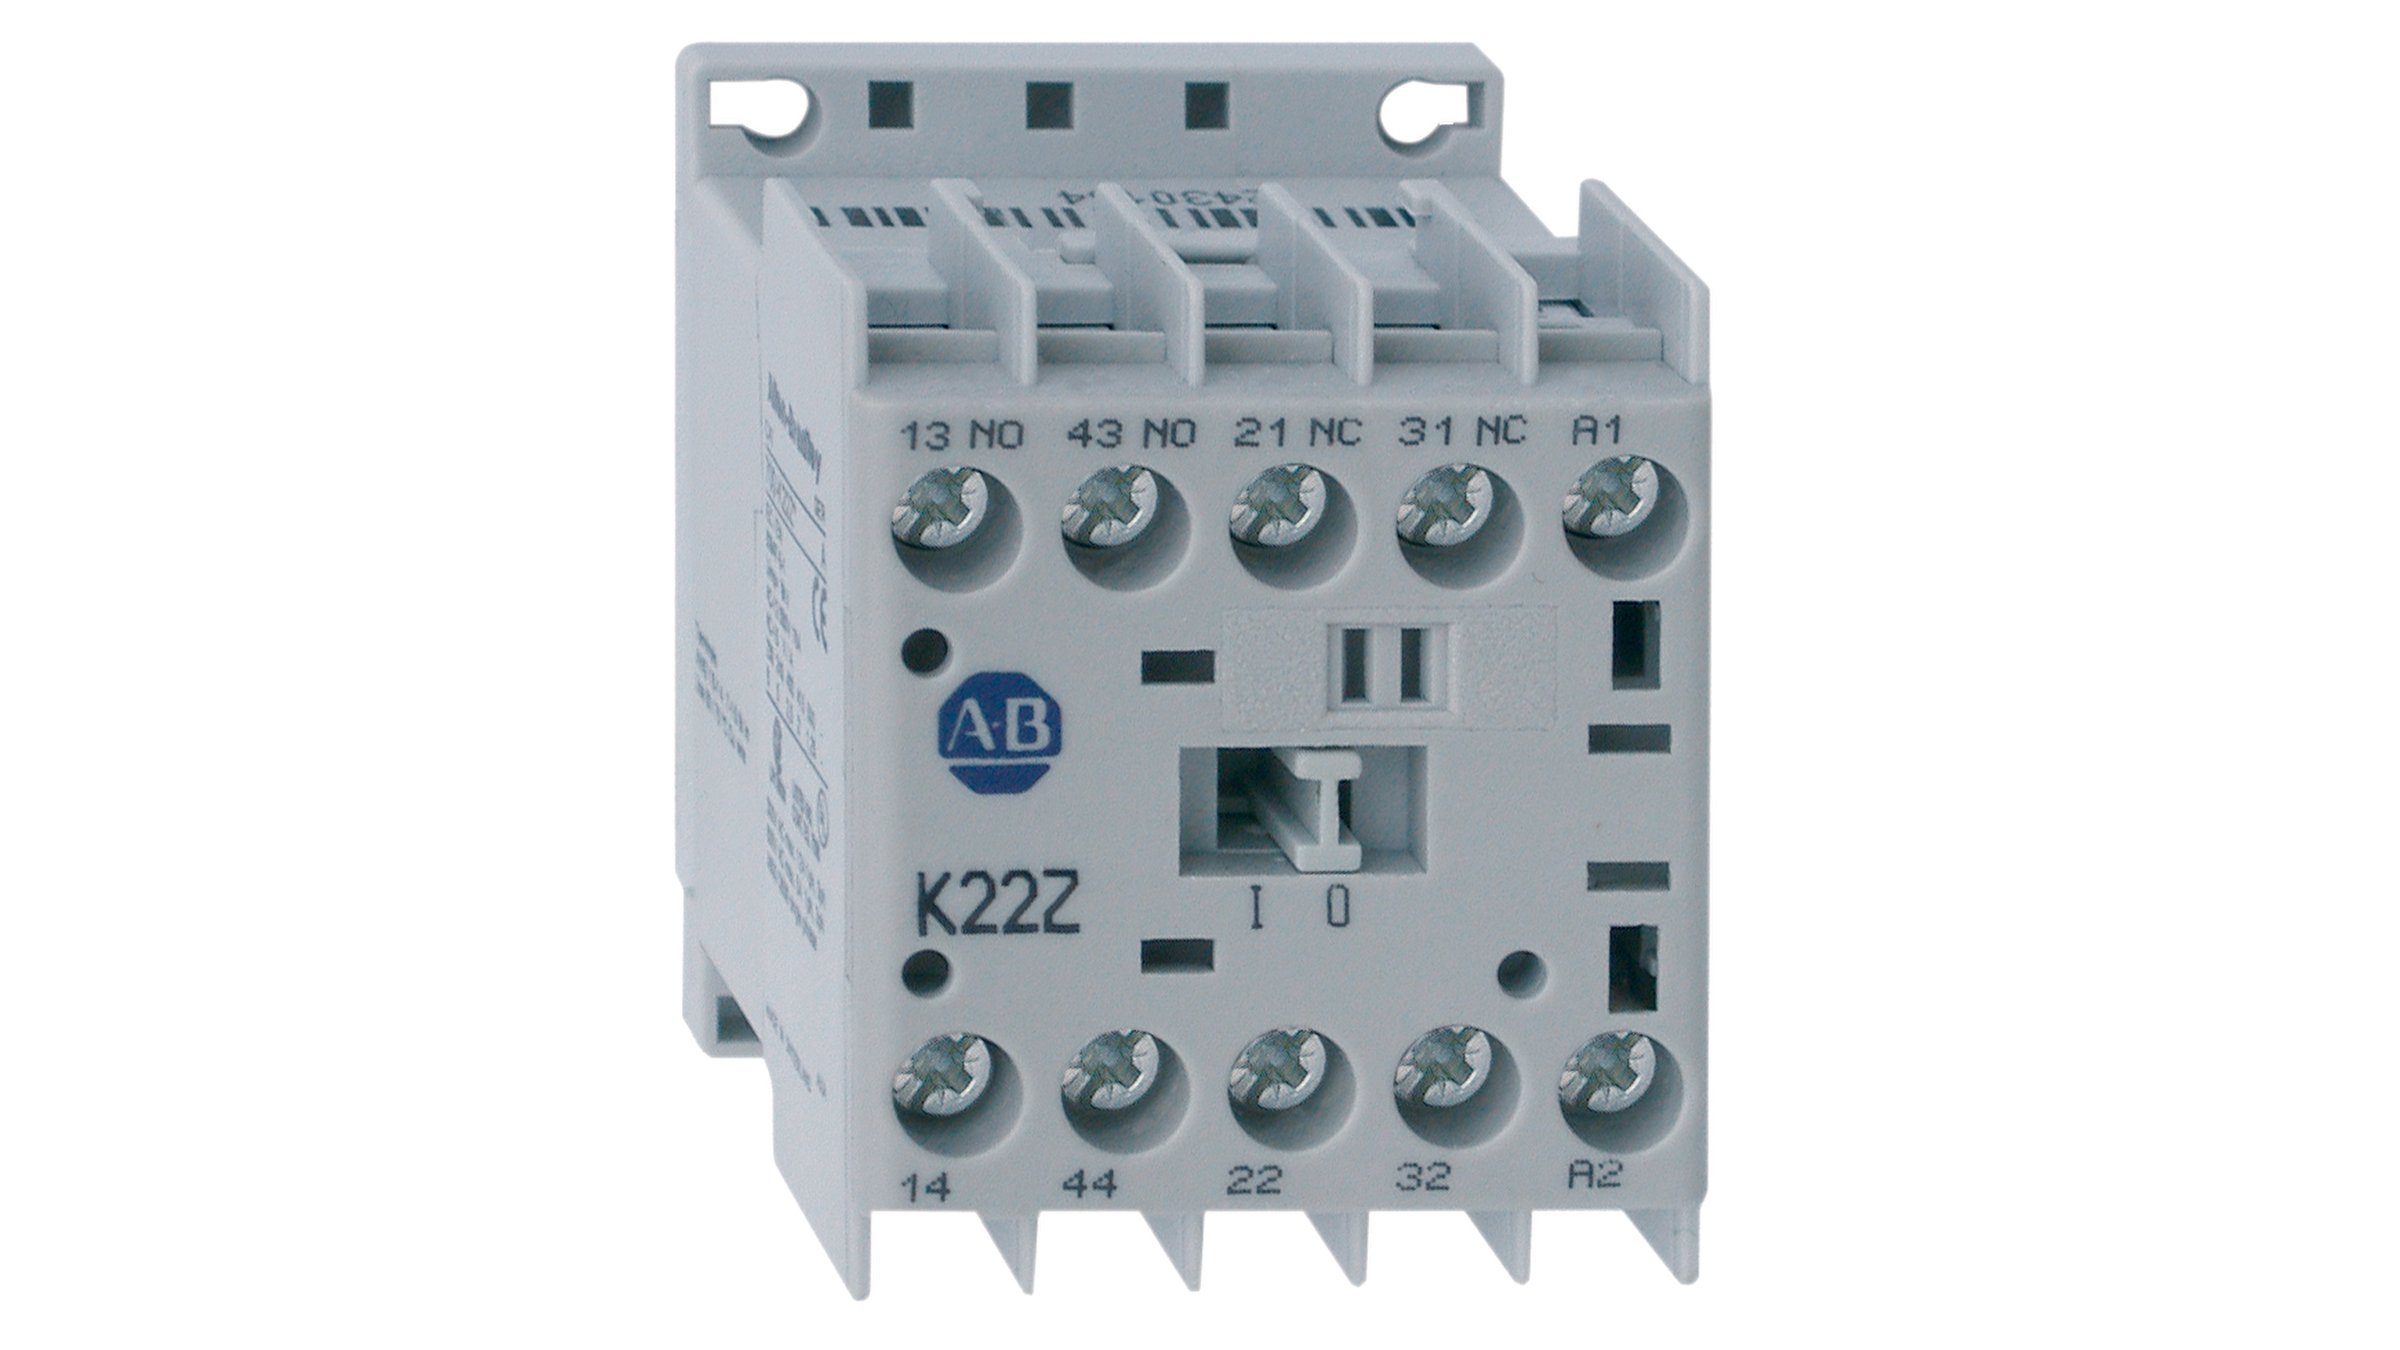 Les relais d'interface CEI Allen-Bradley, série 700-K sont des relais industriels compacts capables de commuter des signaux basse consommation.